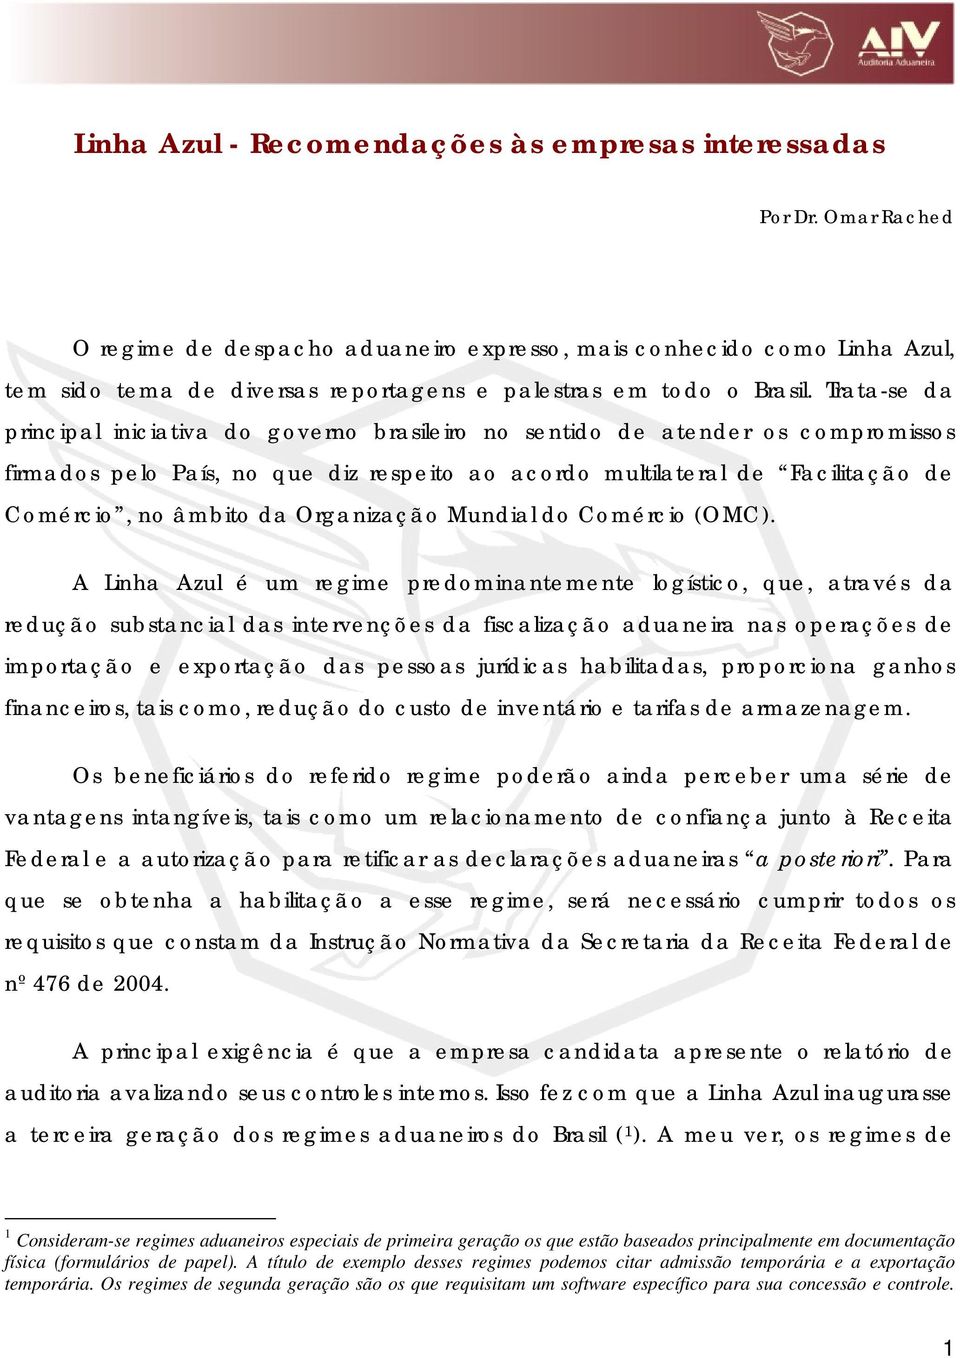 Trata-se da principal iniciativa do governo brasileiro no sentido de atender os compromissos firmados pelo País, no que diz respeito ao acordo multilateral de Facilitação de Comércio, no âmbito da